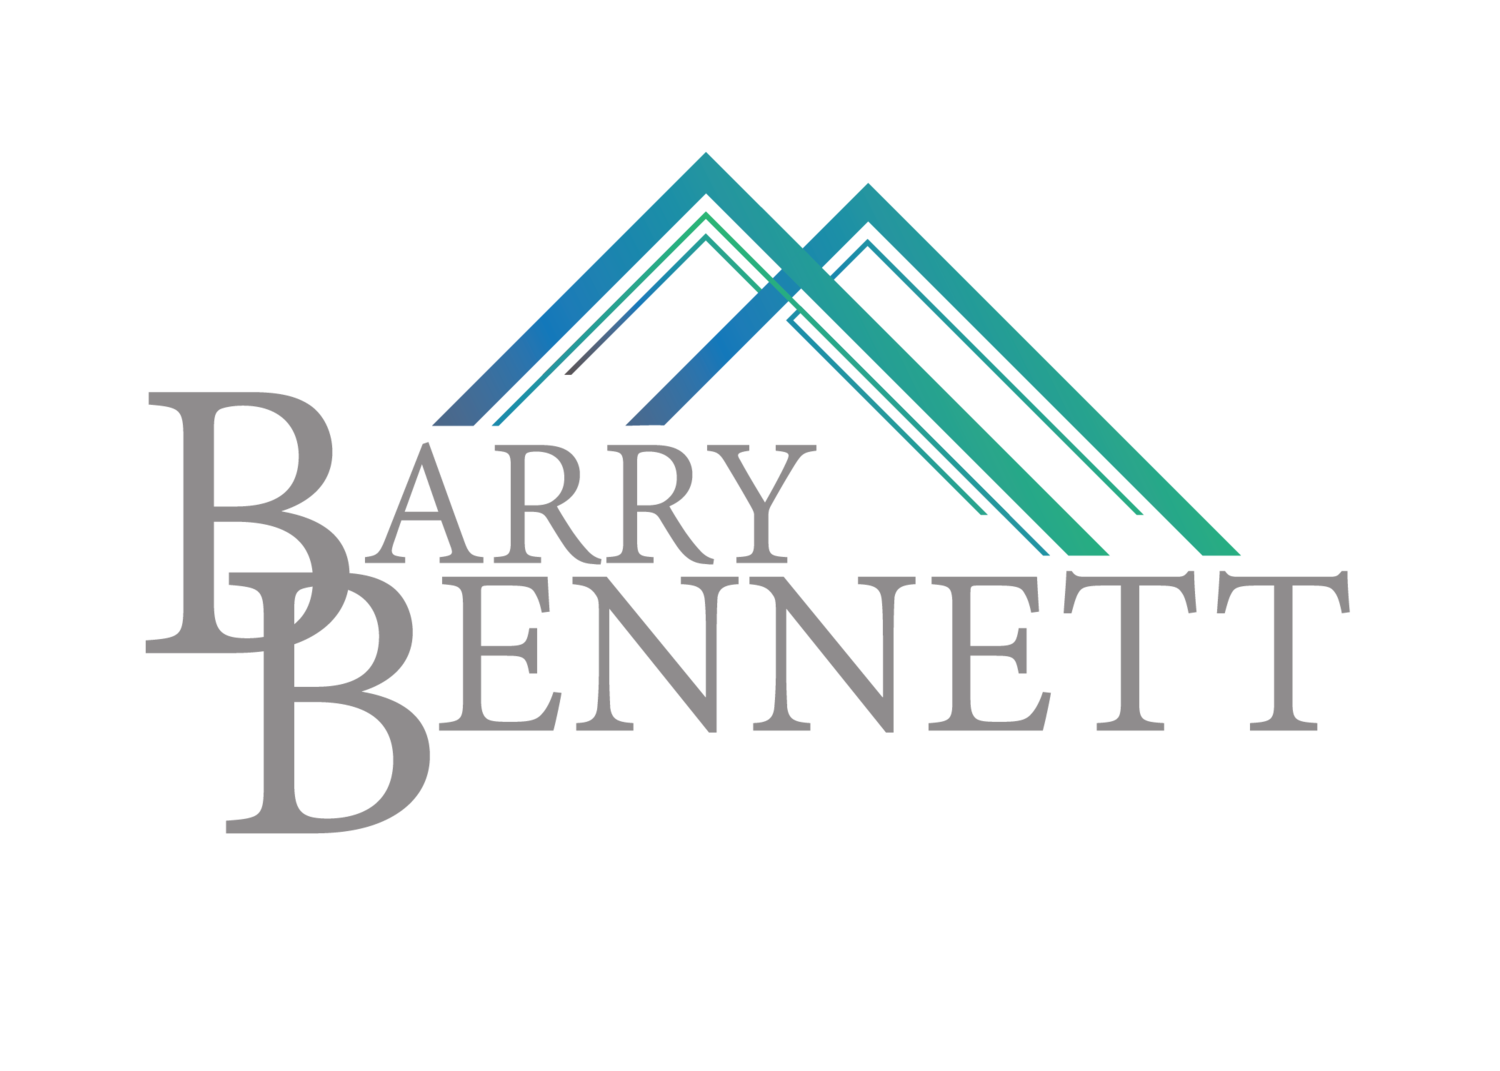 www.barrybennett.org